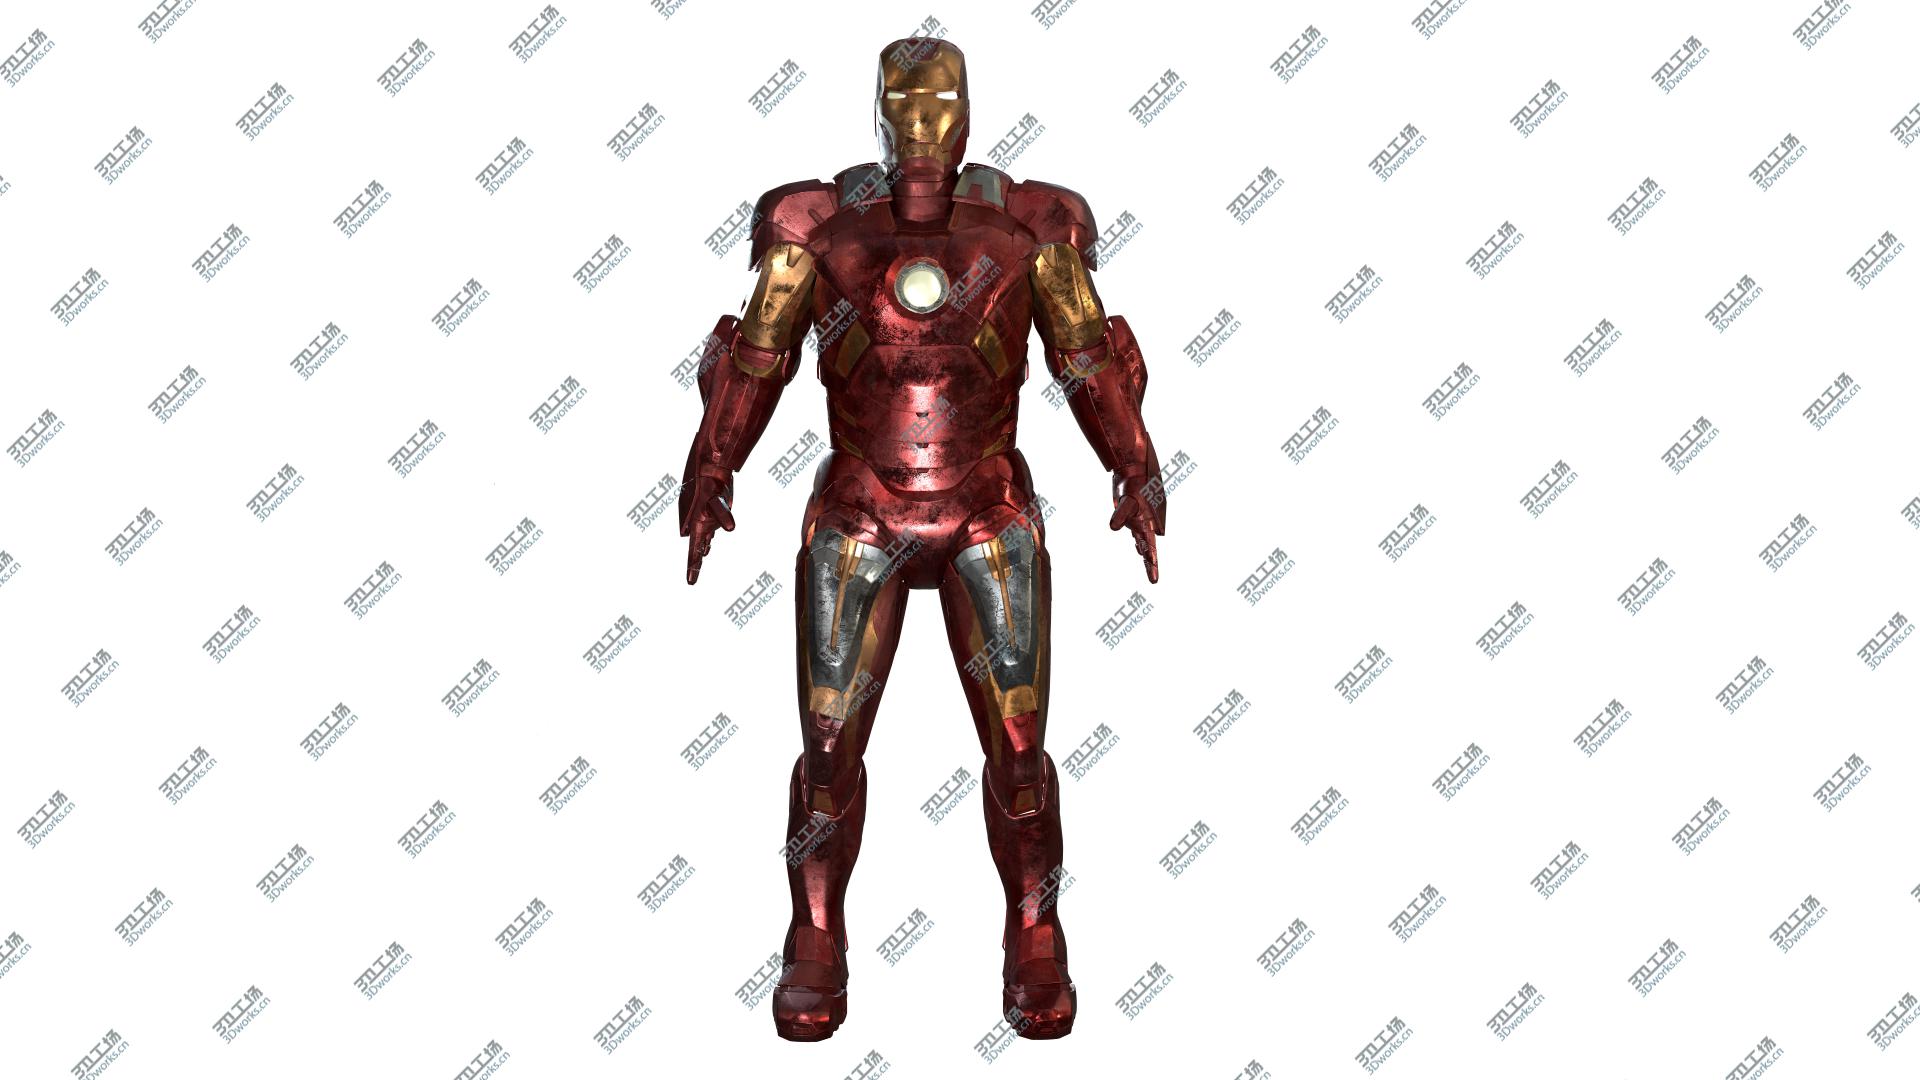 images/goods_img/202104093/3D Iron Man Mark VII model/2.jpg